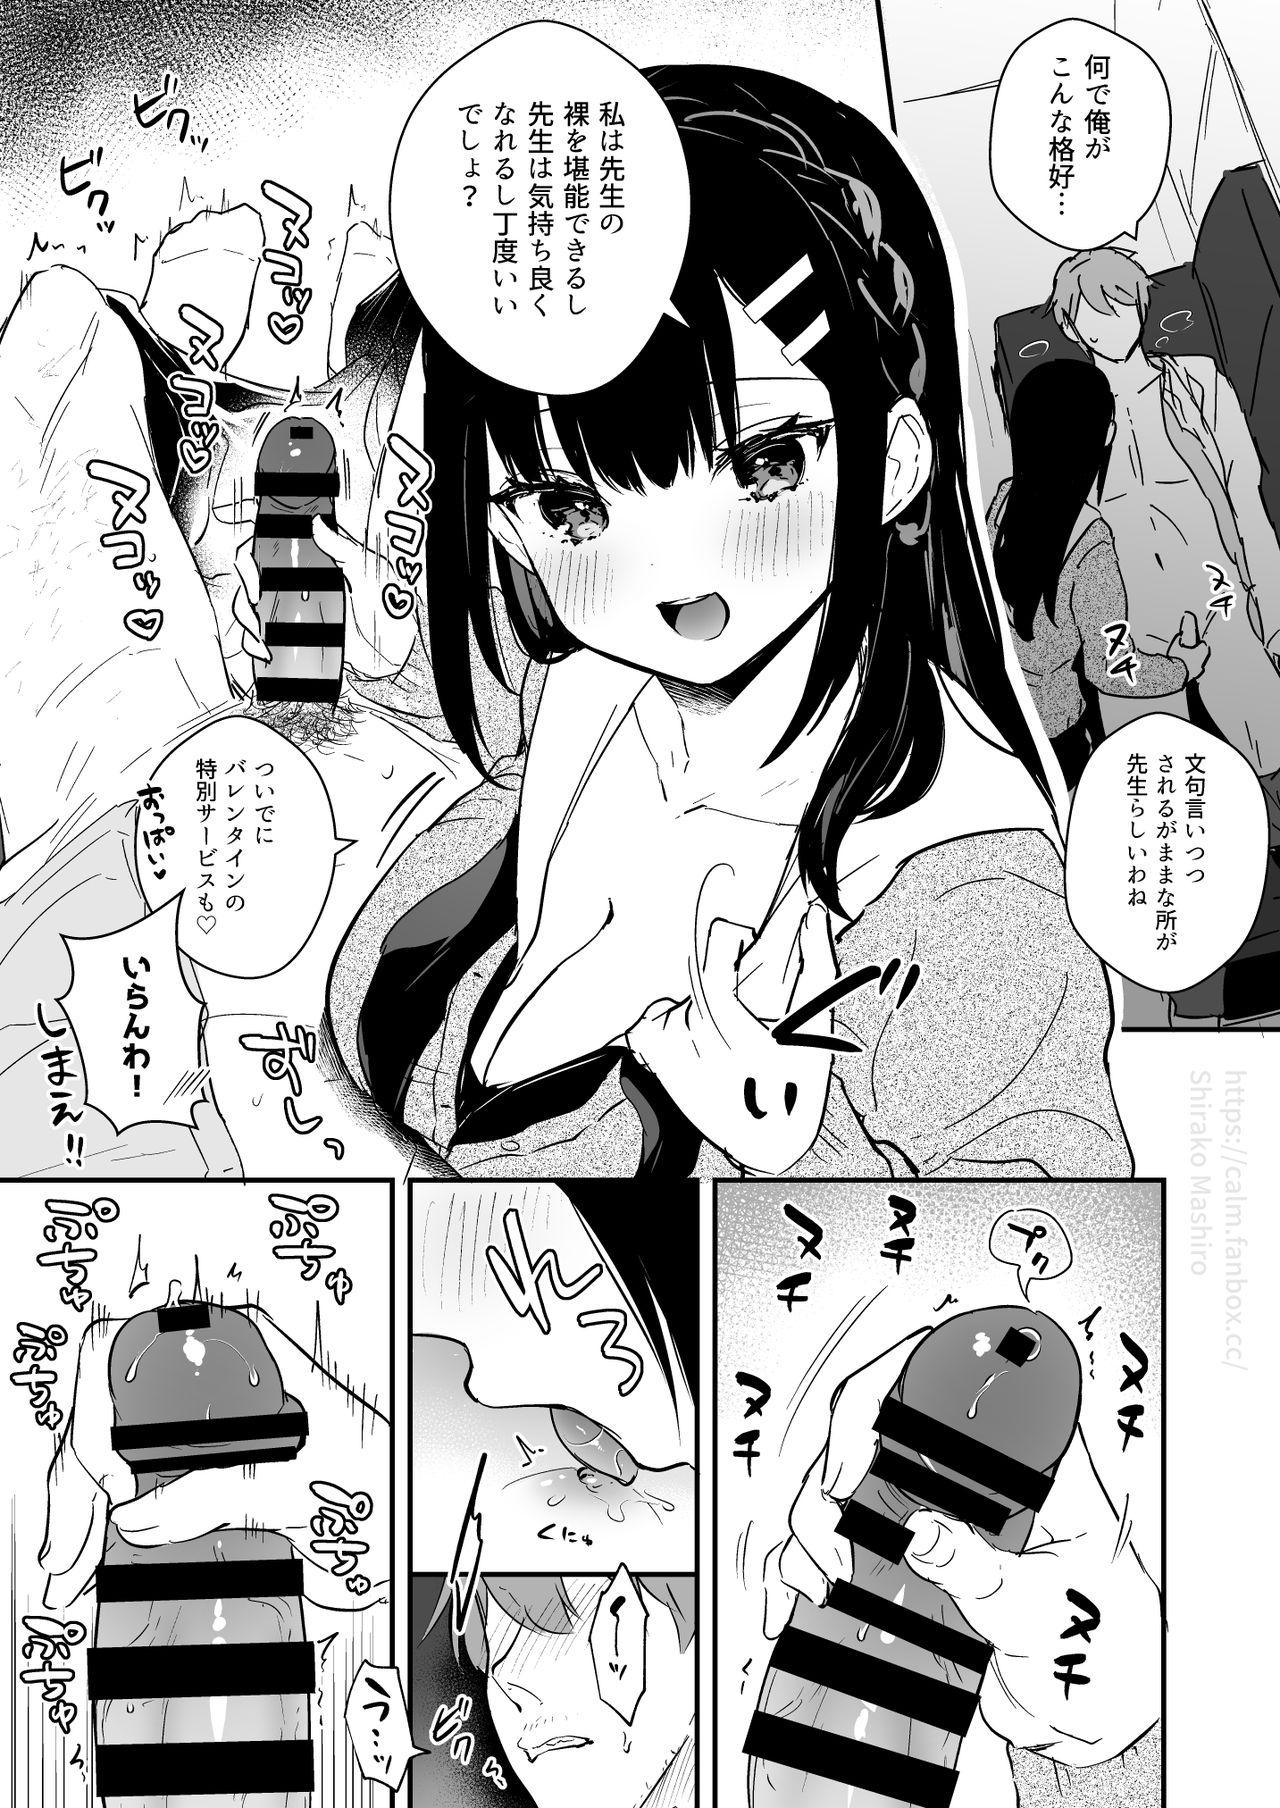 Cock Sucking JK Miyako no Valentine Manga 18 Year Old - Page 5